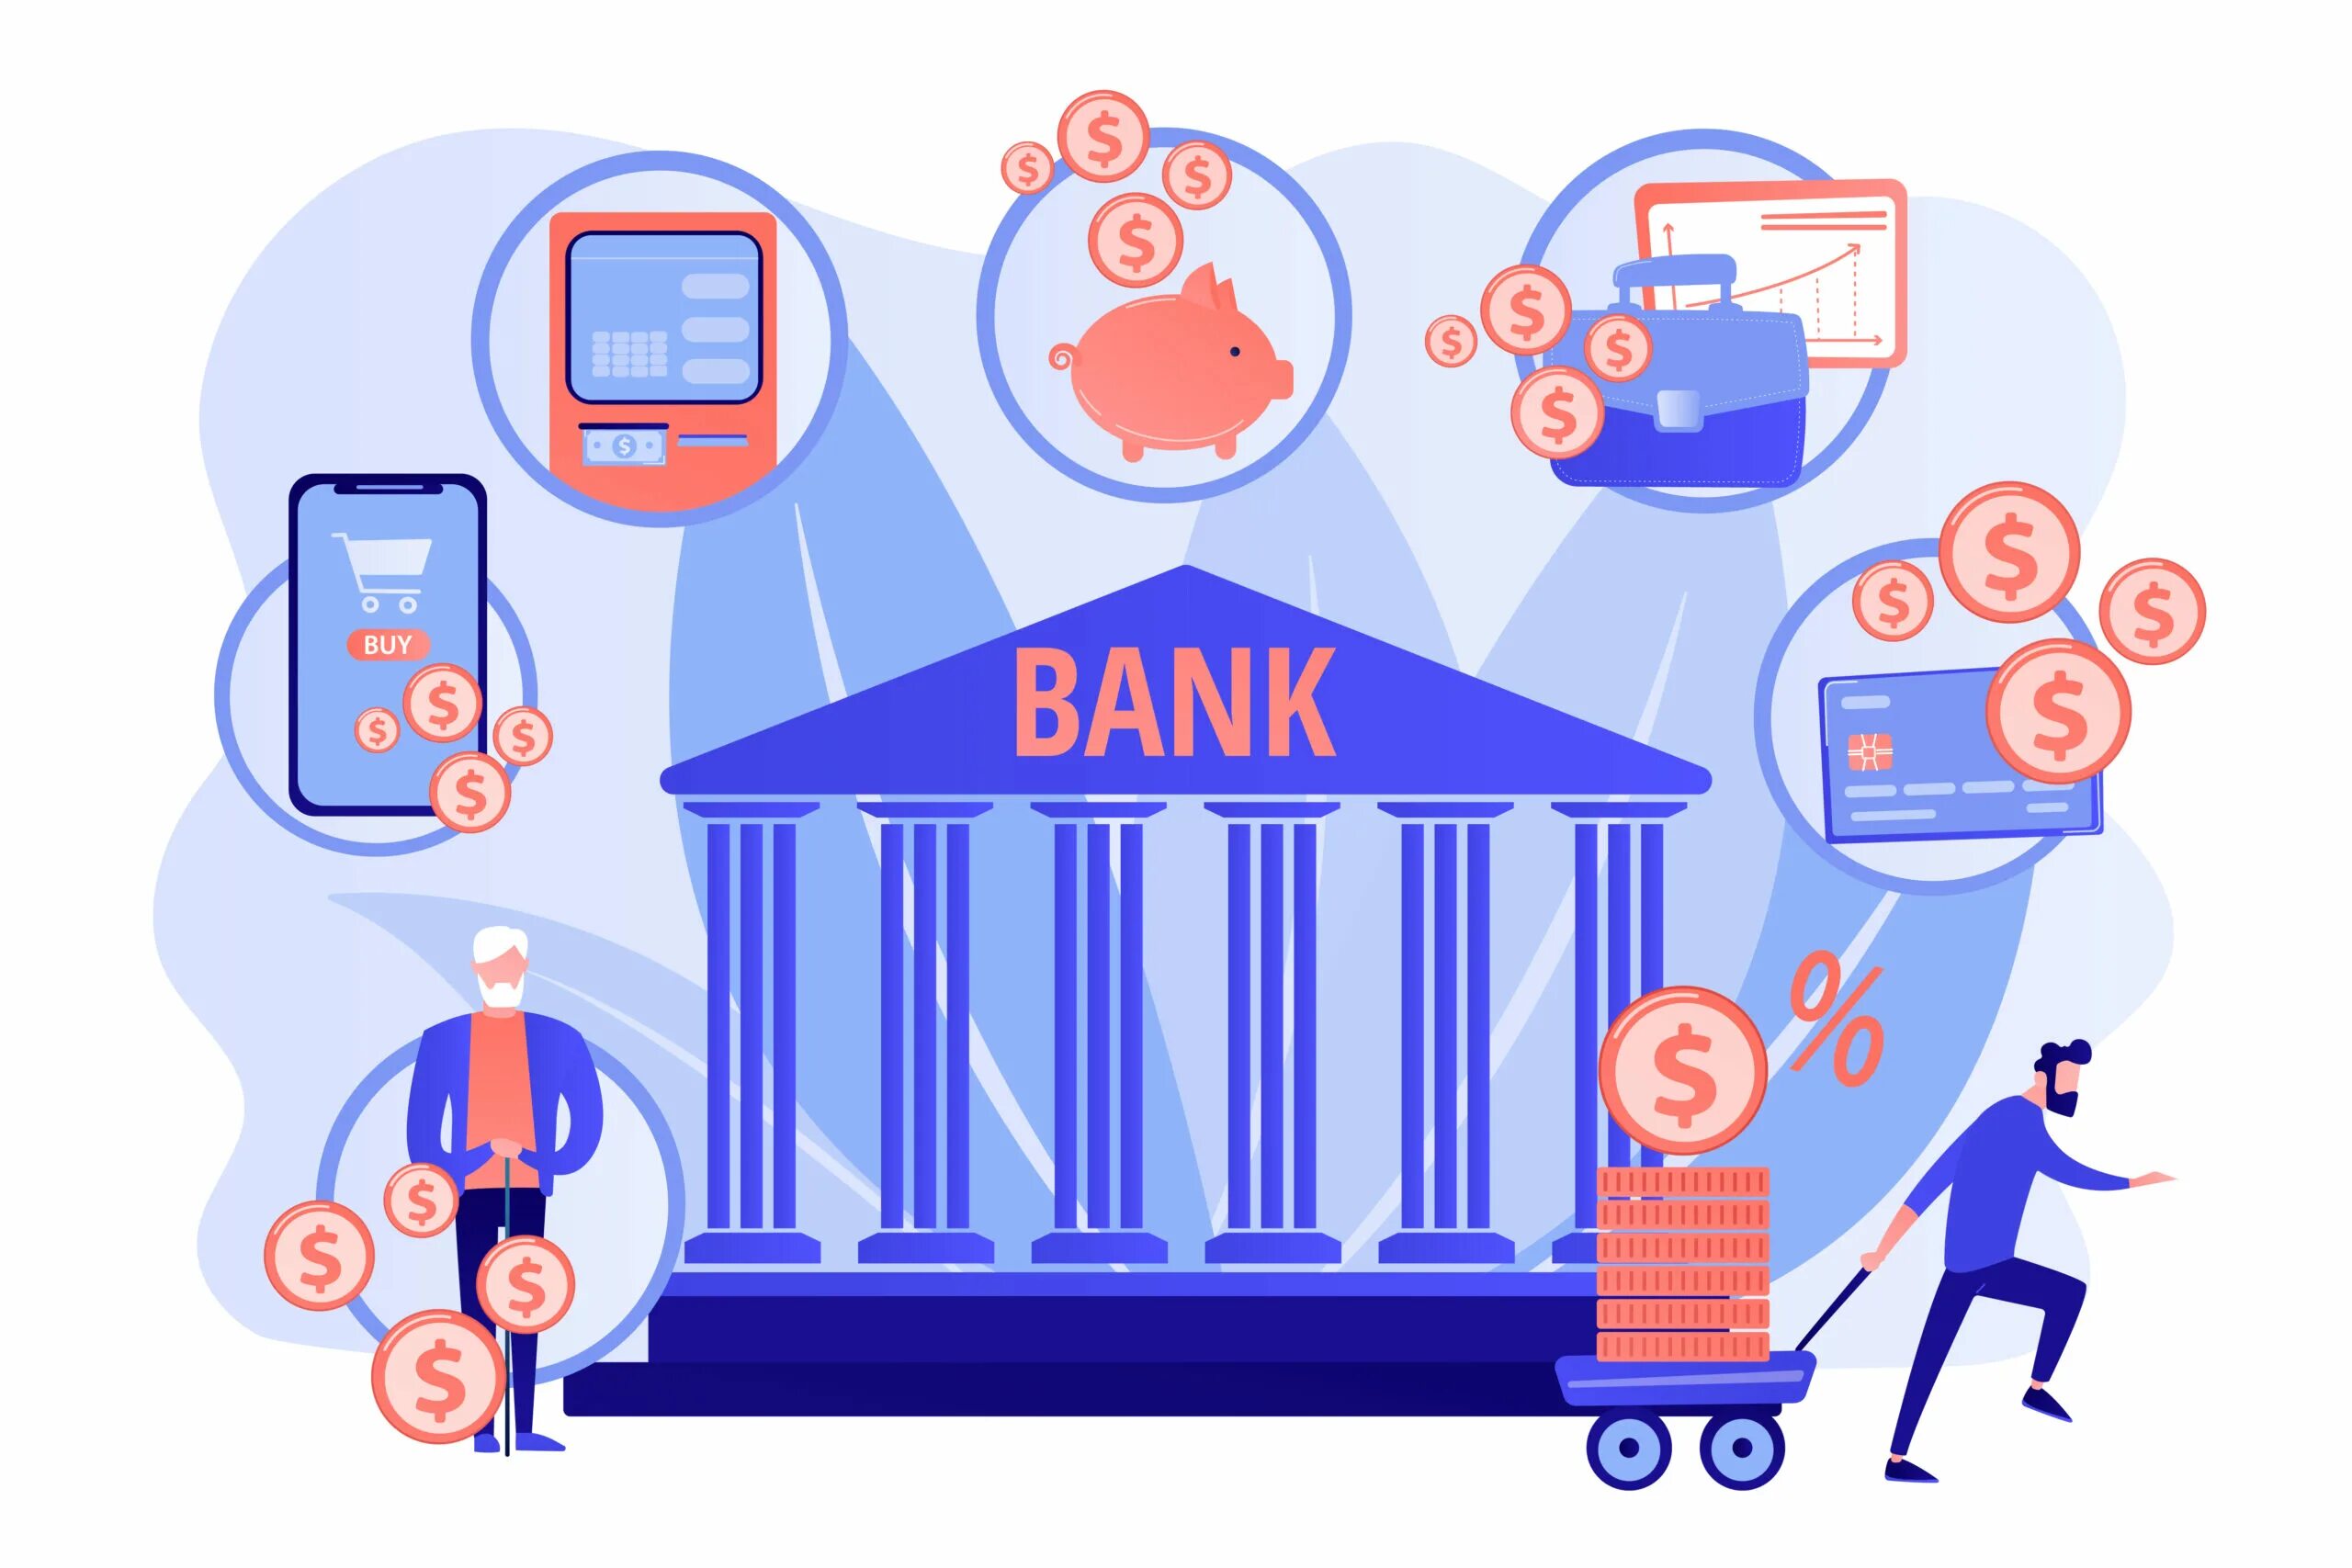 Resource bank. Банковские иллюстрации. Векторные иллюстрации банк. Цифровые финансовые услуги рисунок. Банк картинка.